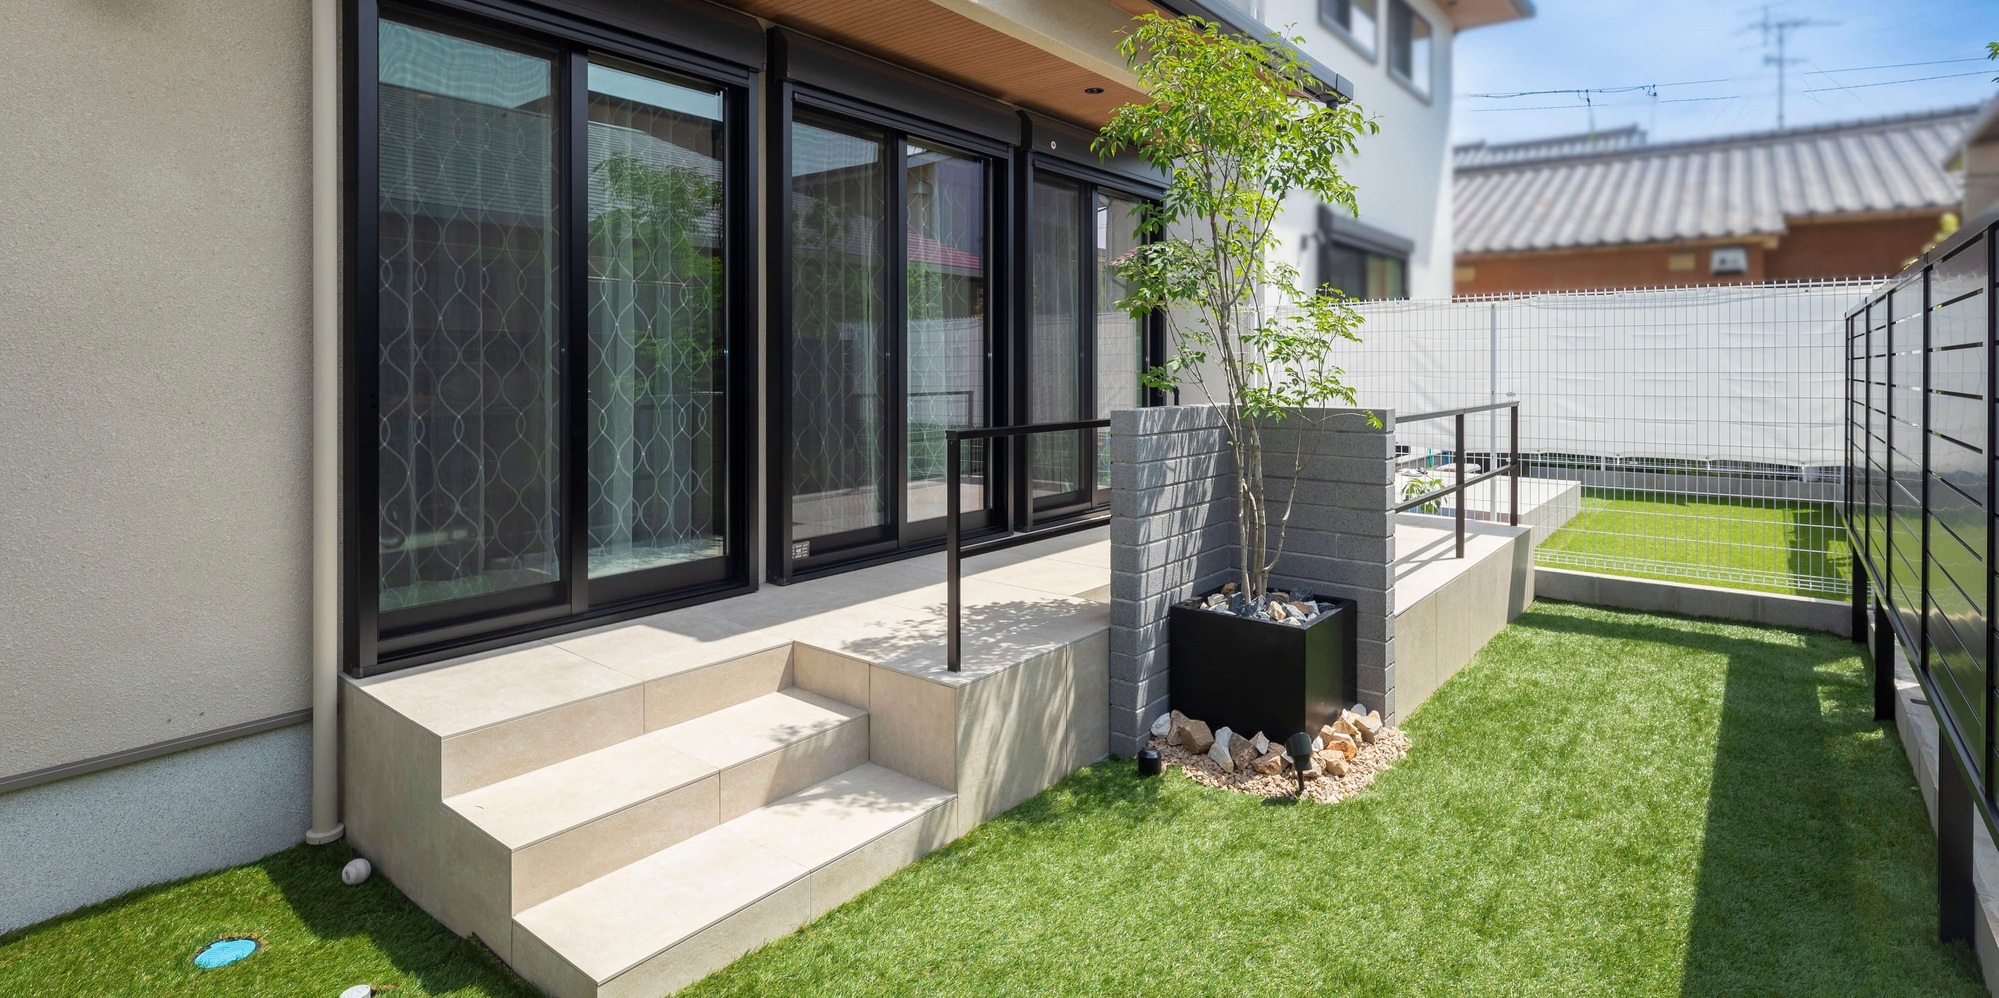 新築外構 住友林業 タイルテラス 庭工事 かっこいい ガーデンデザイン カーポートSC 目隠しフェンス